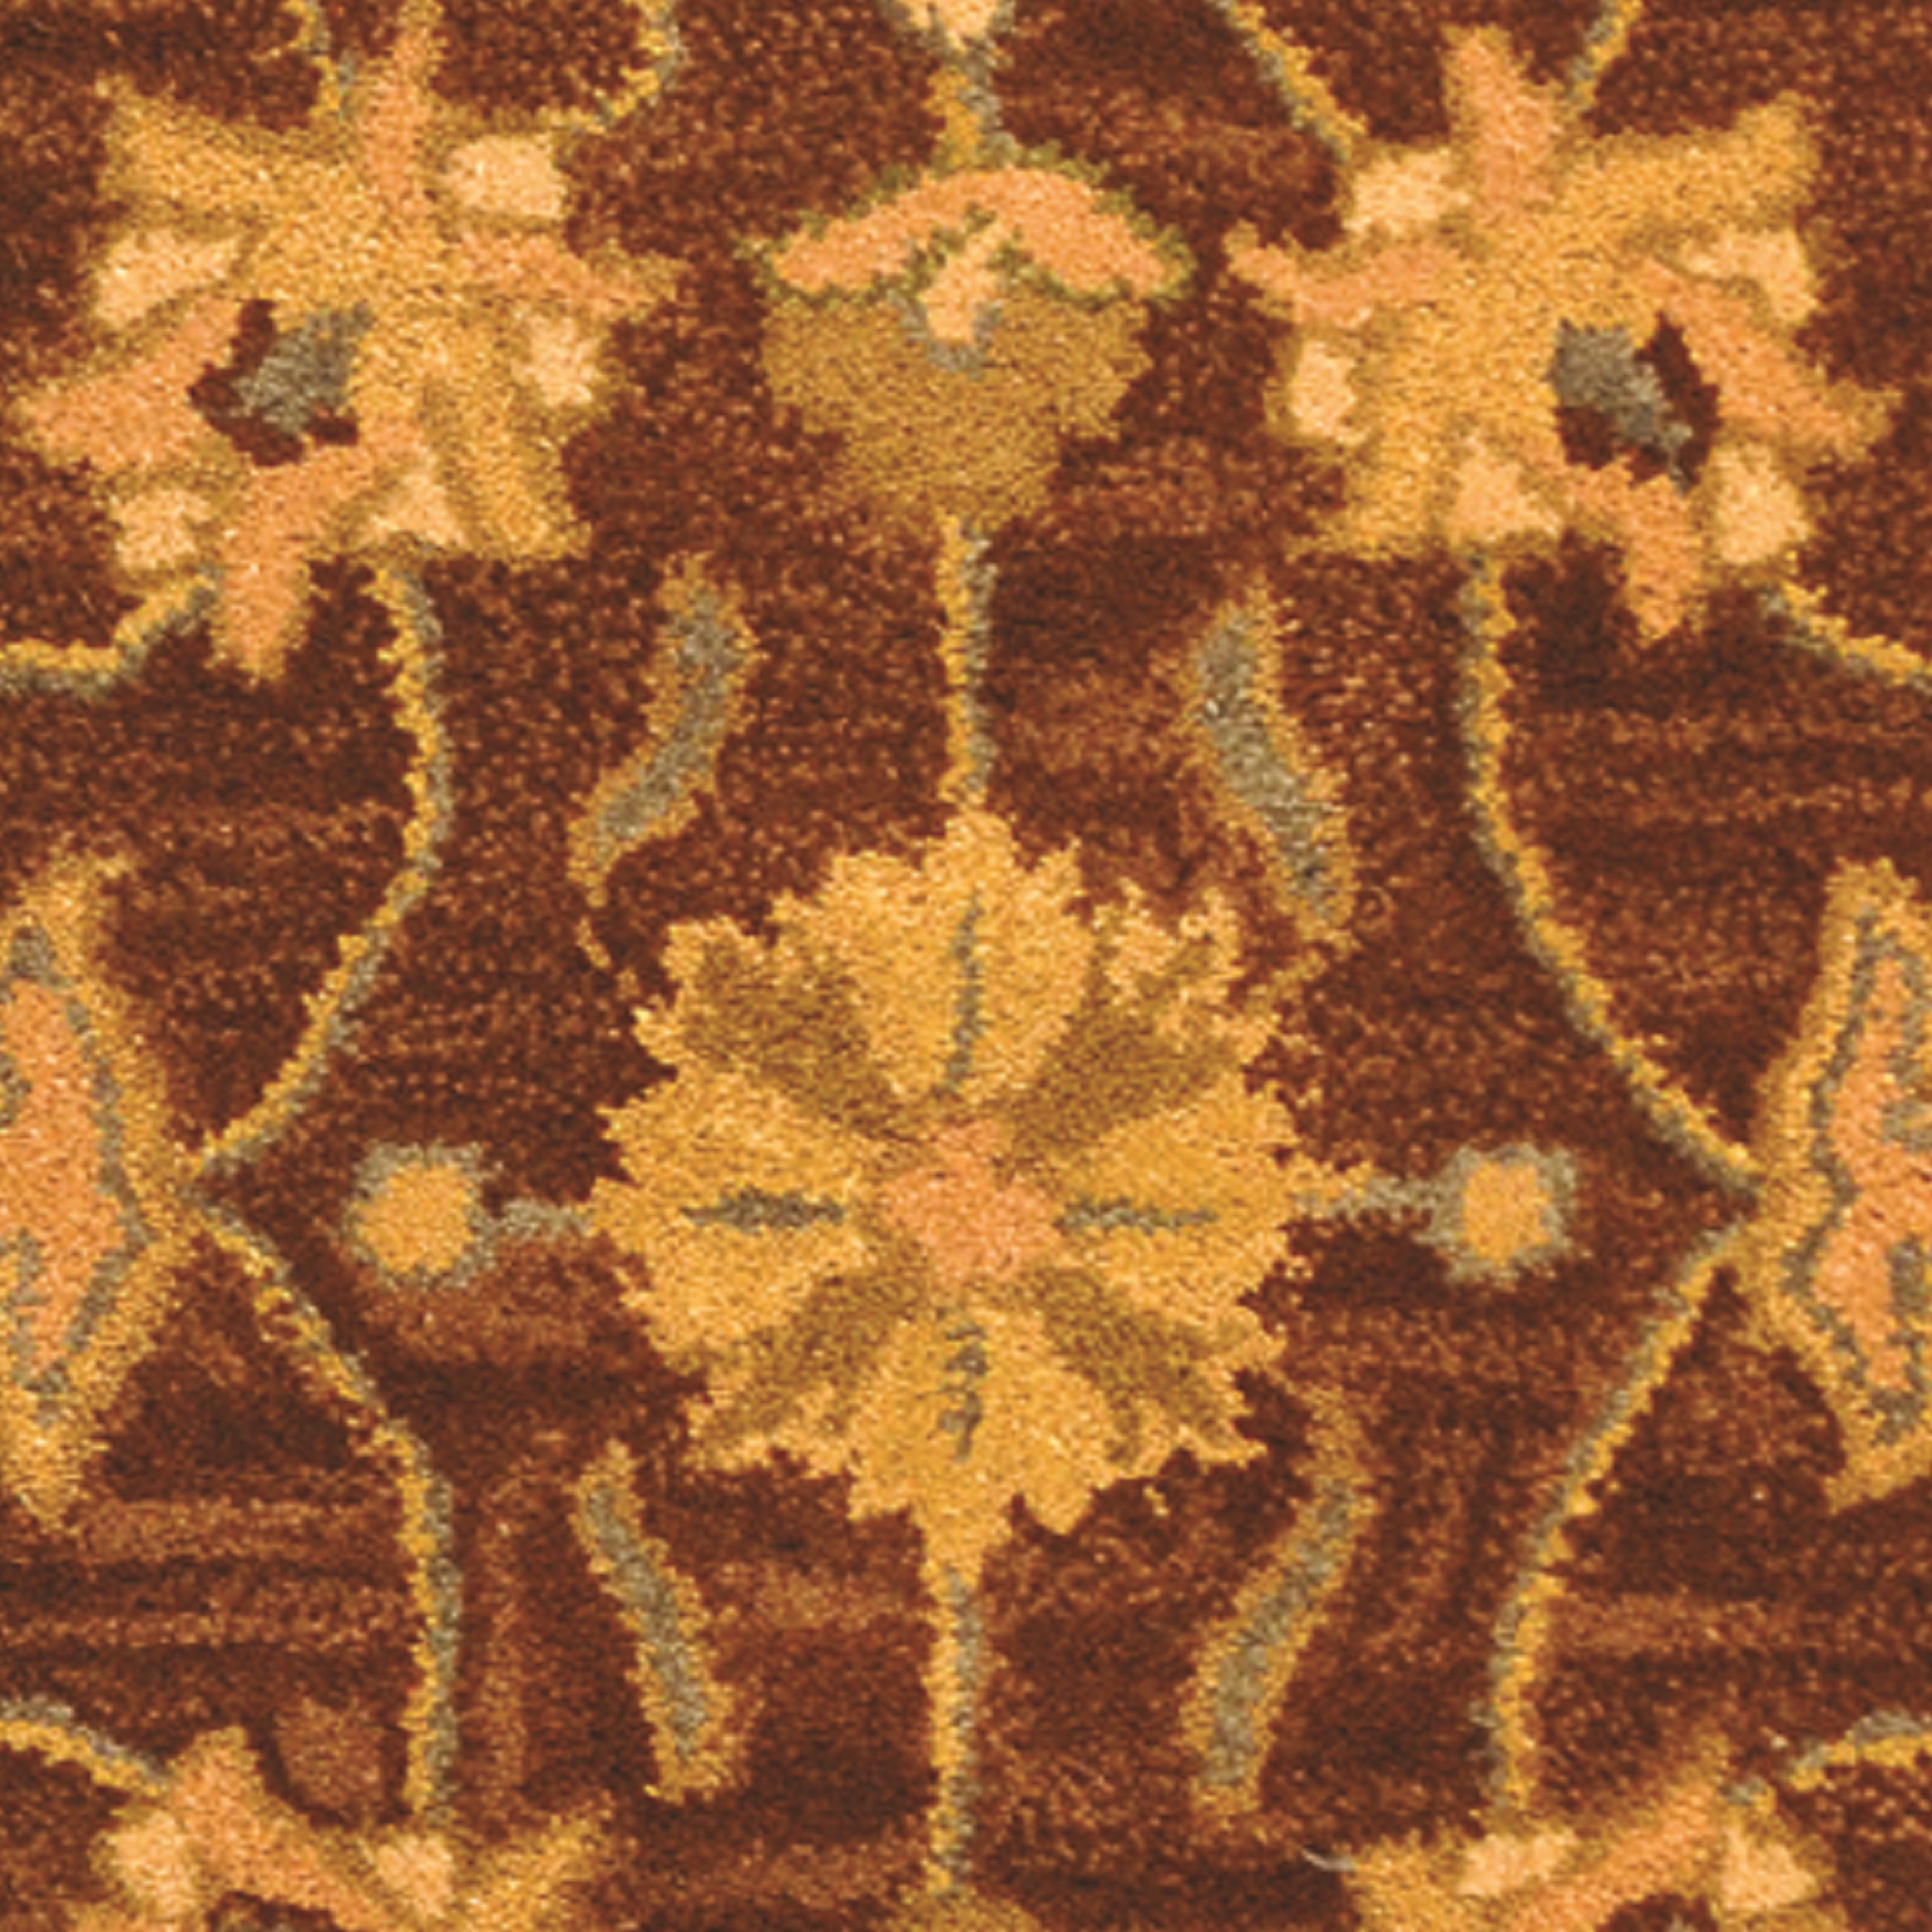 SAFAVIEH Heritage Regis Traditional Wool Runner Rug, Brown/Blue, 2'3" x 14' - image 3 of 4